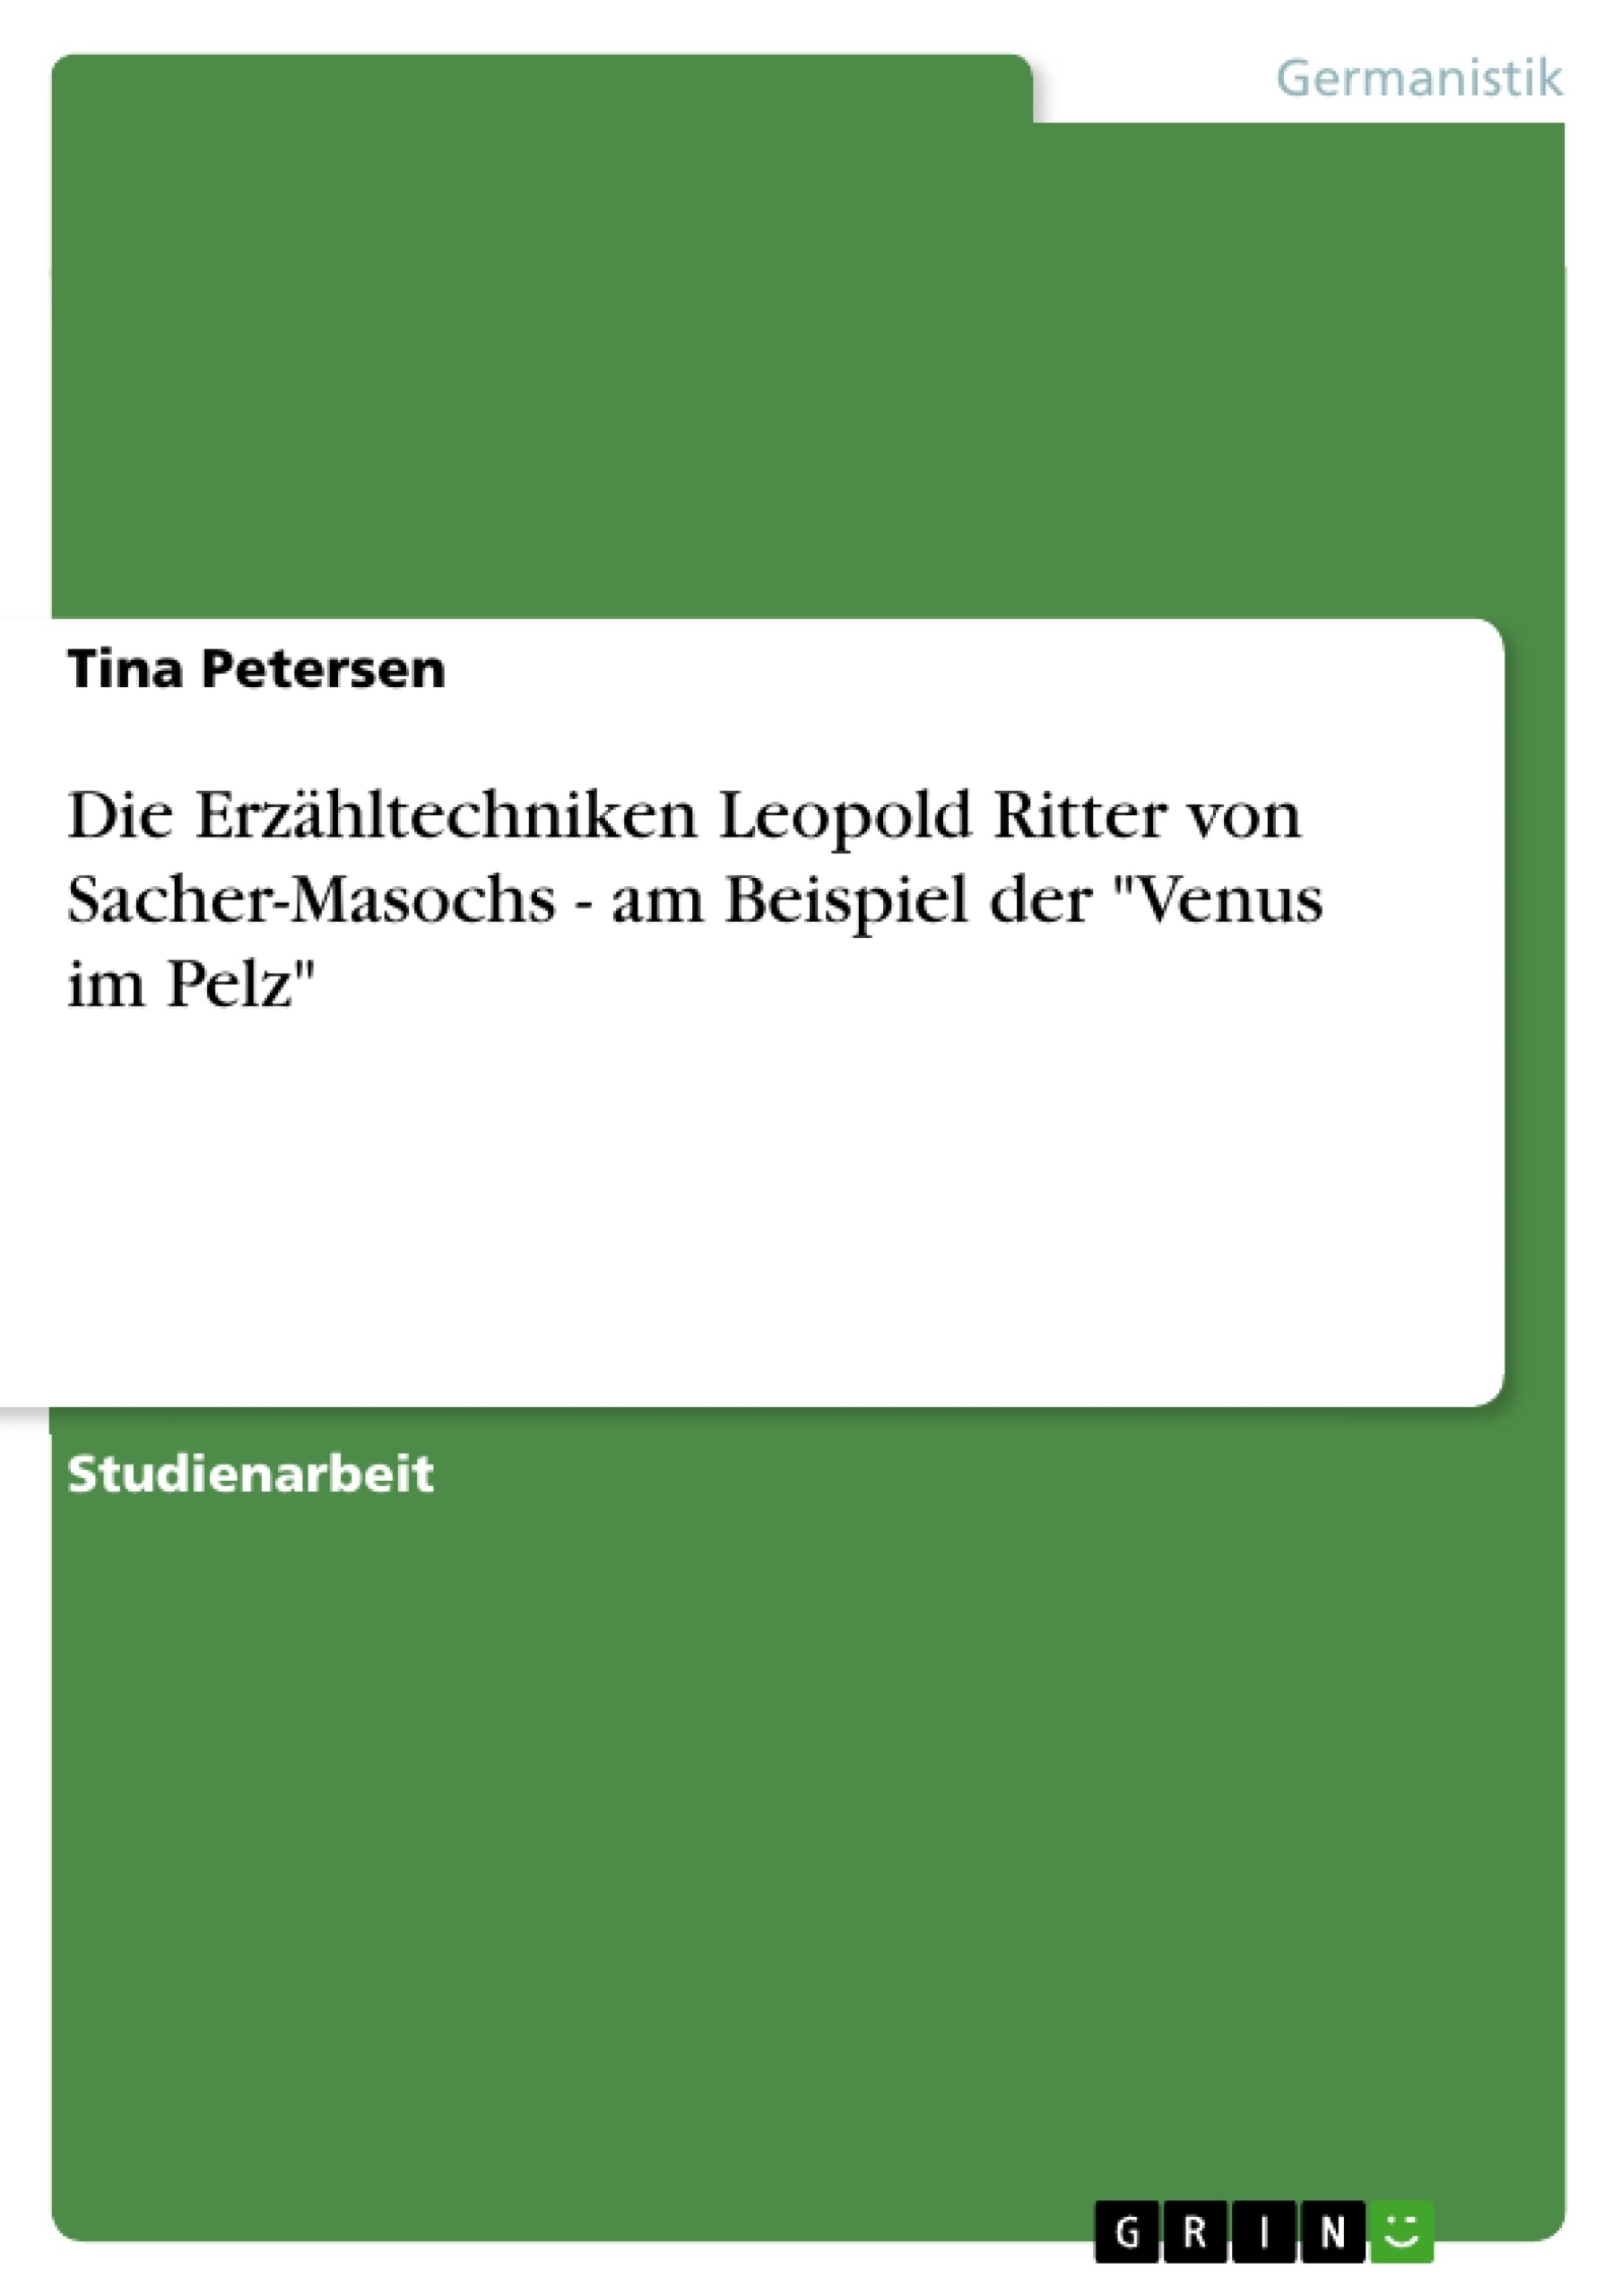 Titel: Die Erzähltechniken Leopold Ritter von Sacher-Masochs - am Beispiel der "Venus im Pelz"